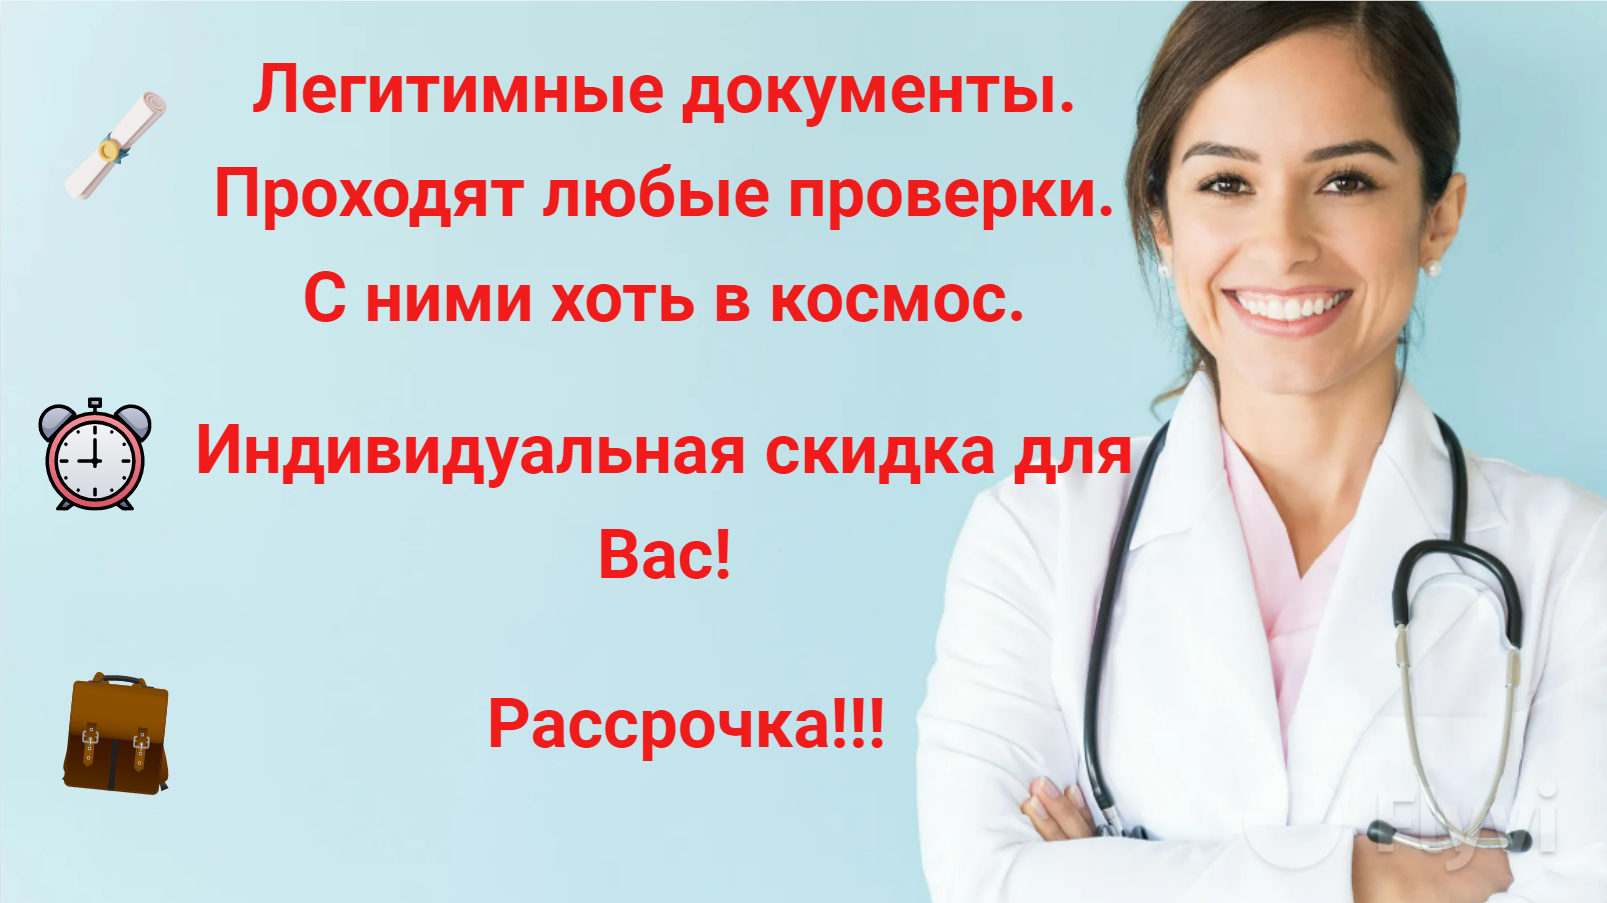 получить статус московский врач из другого региона